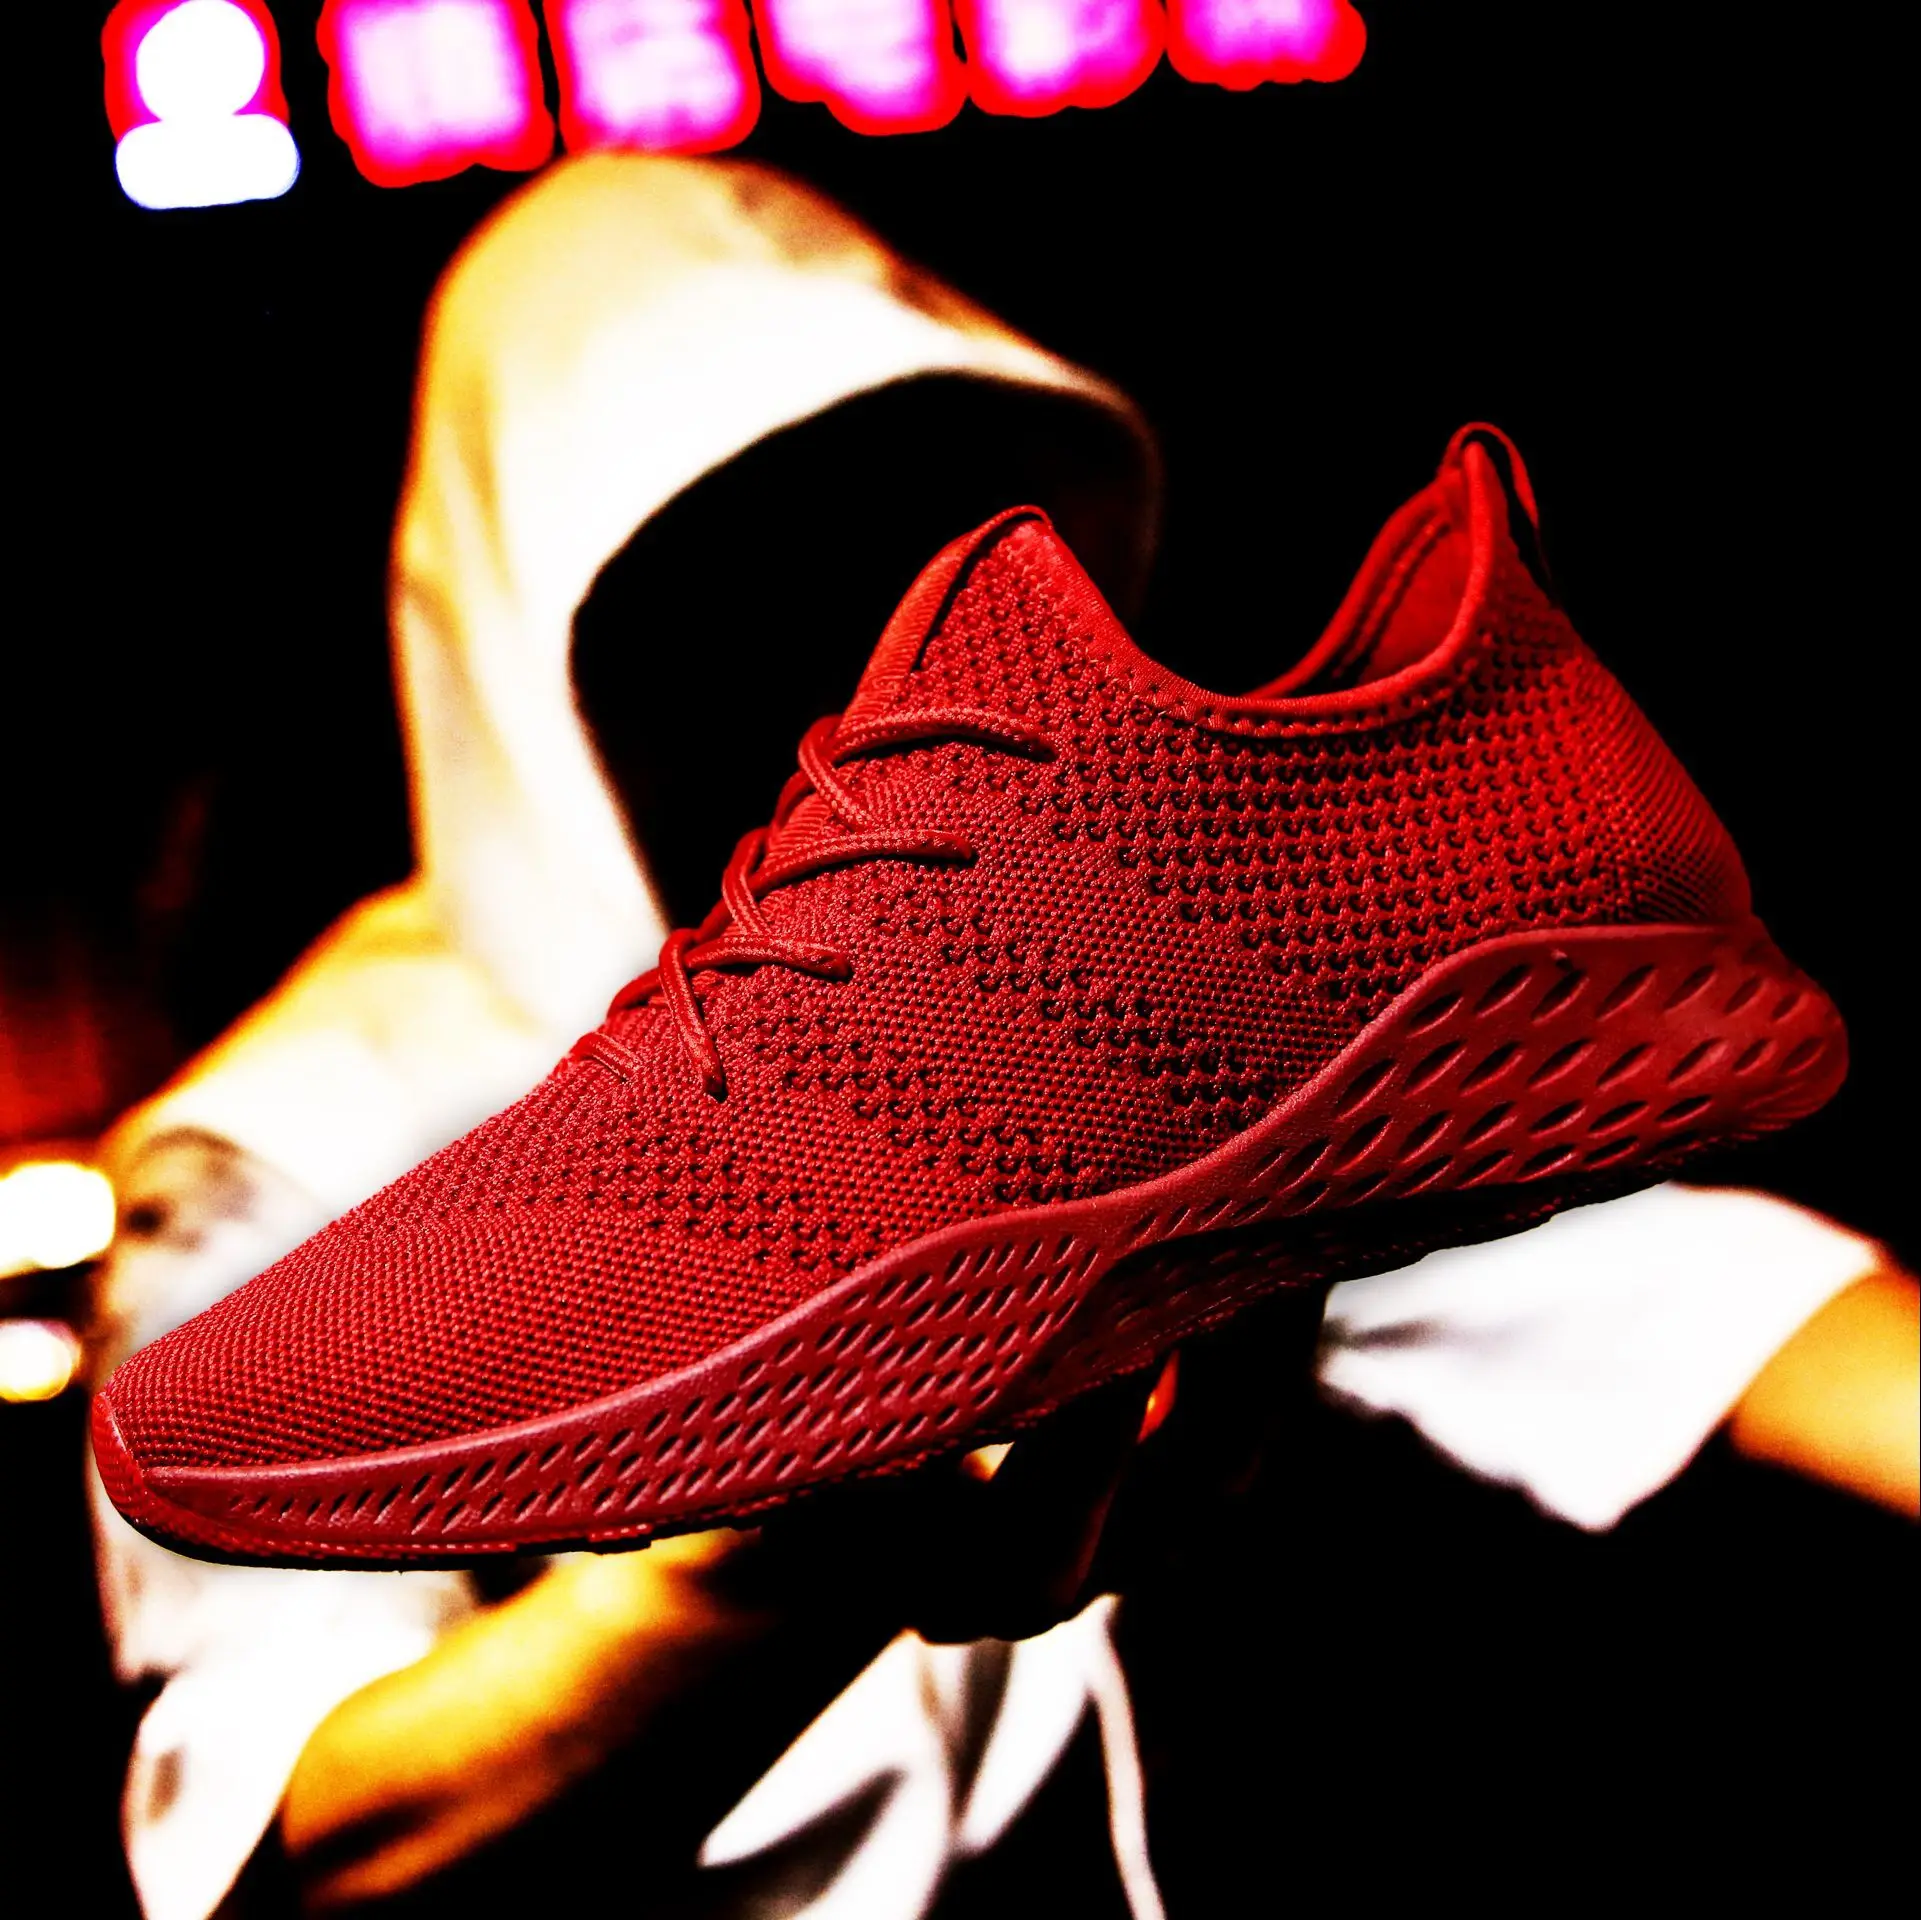 2019 новые уличные кроссовки для мужчин Лидер продаж дышащая сетка спортивная обувь красный черный серый мужские кроссовки мягкие мужские